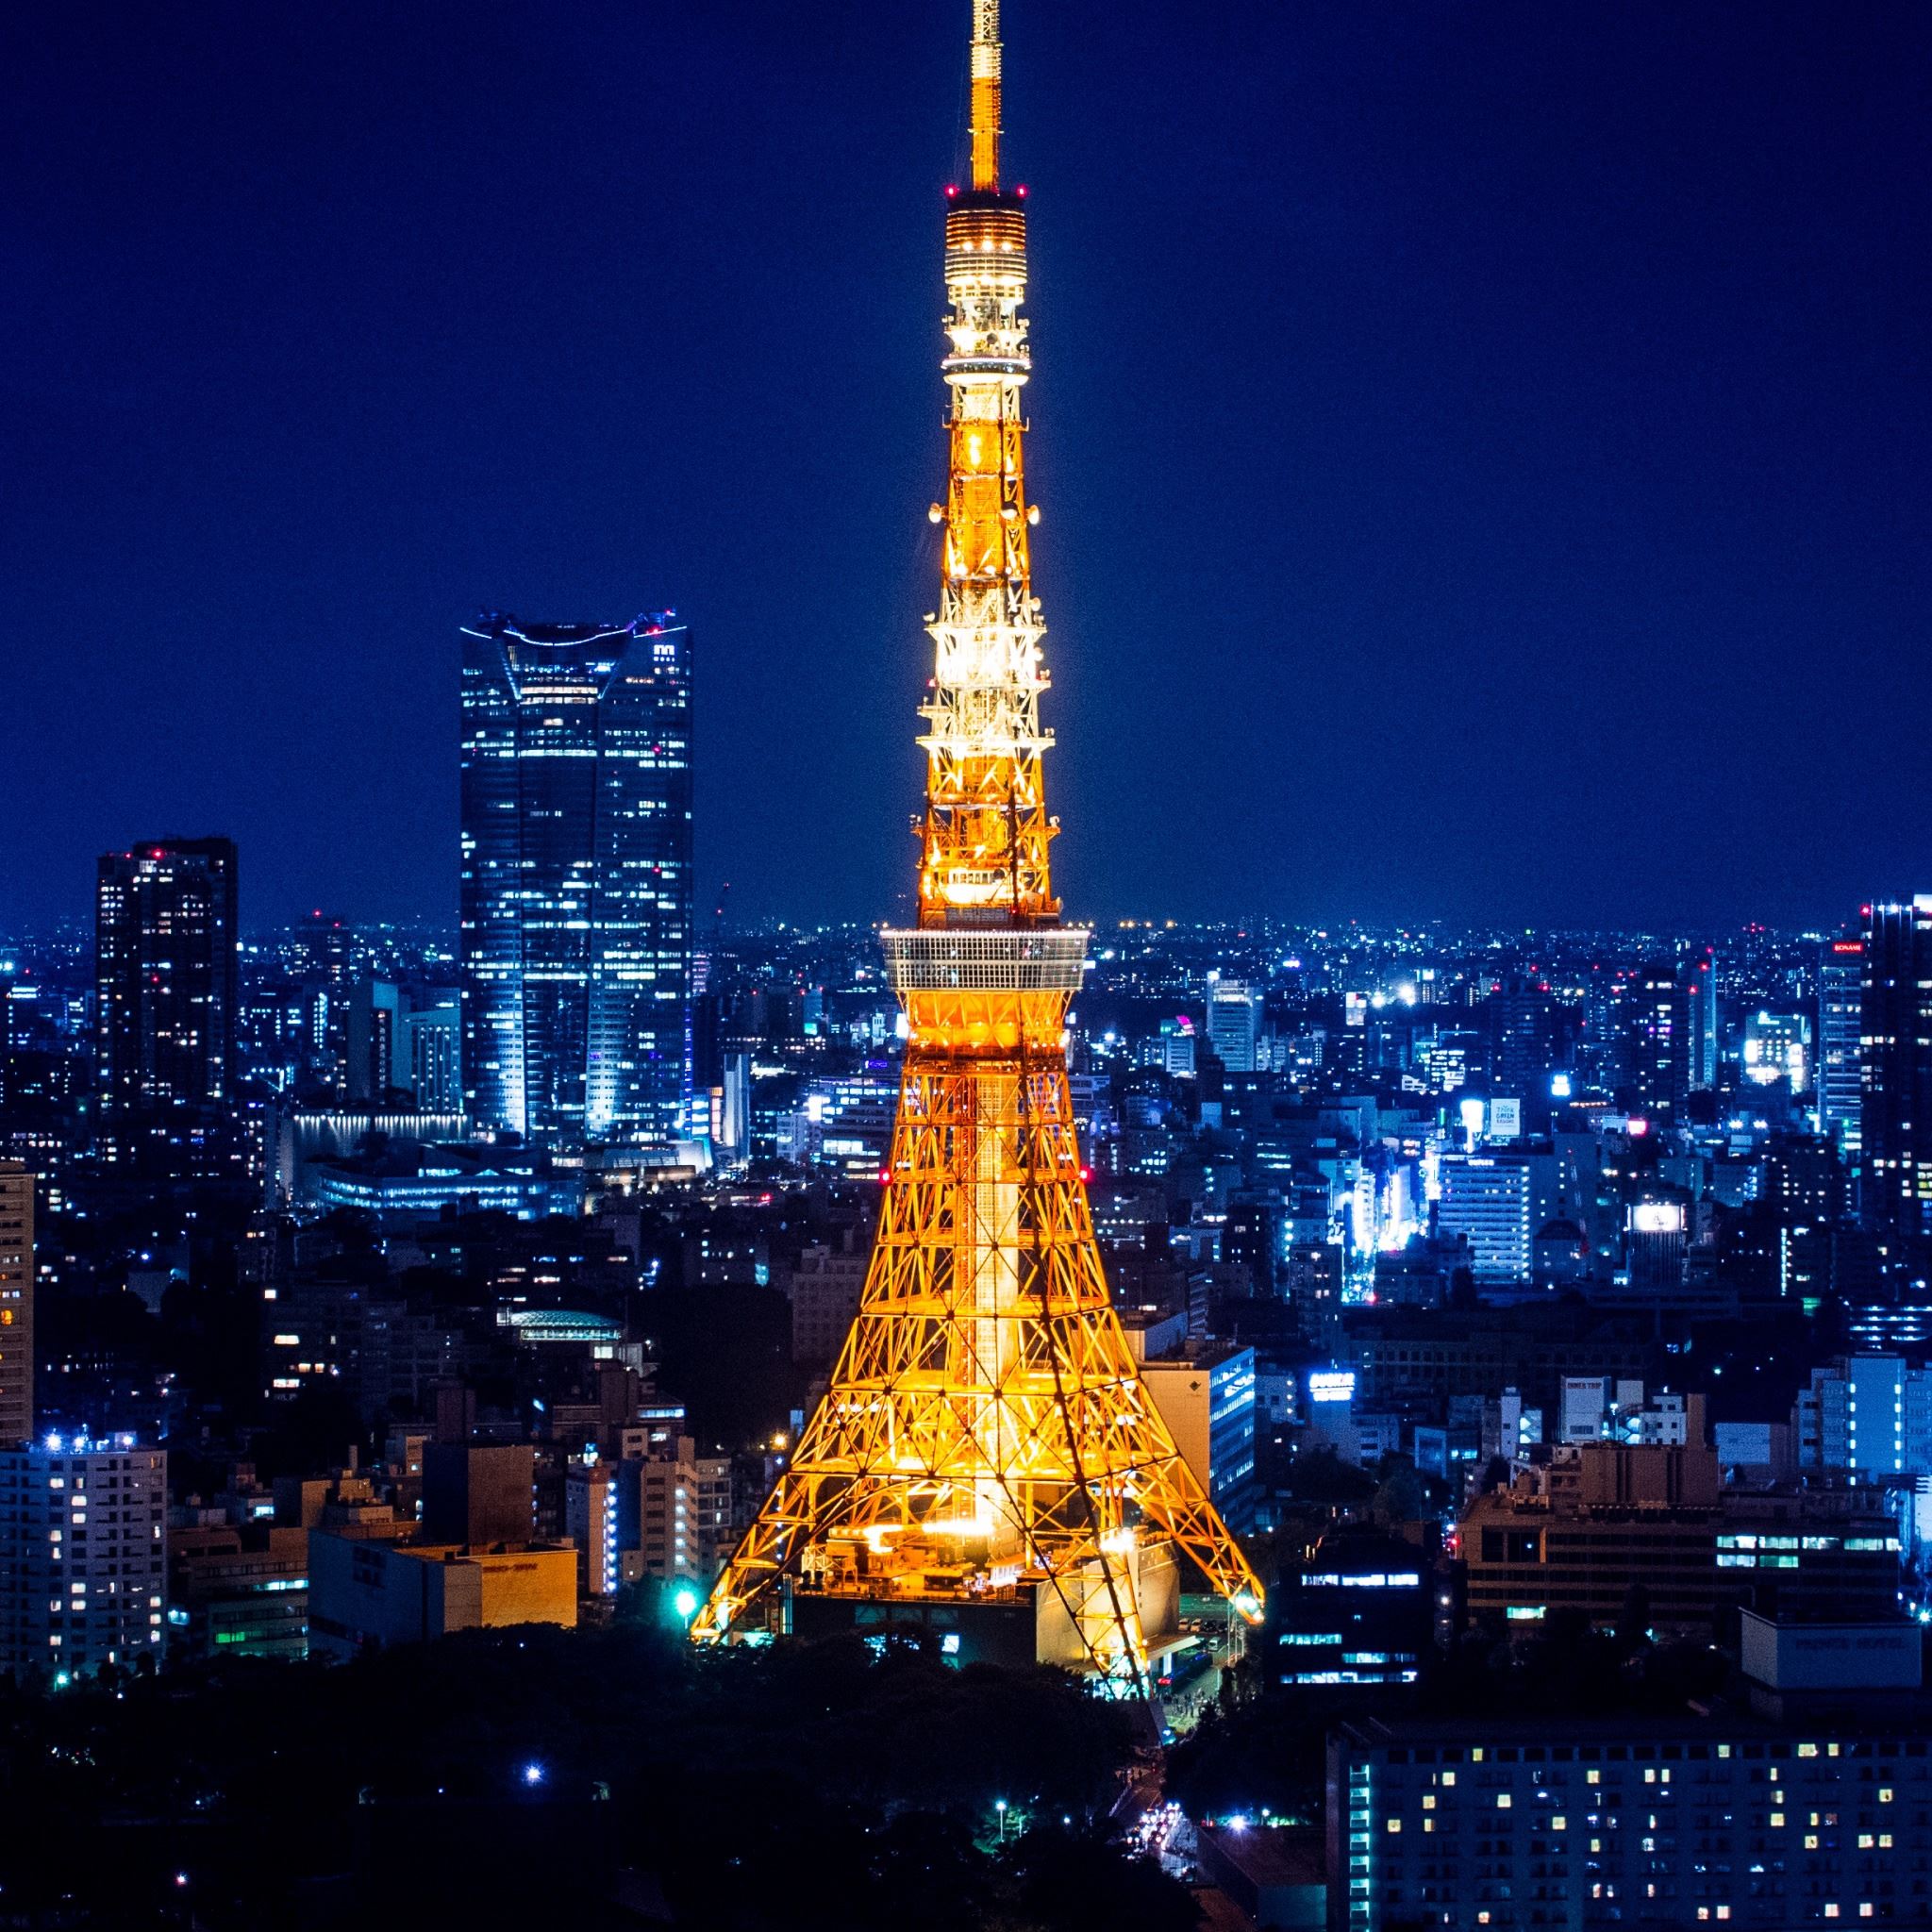 Tokyo Tower At Night iPad Air wallpaper 